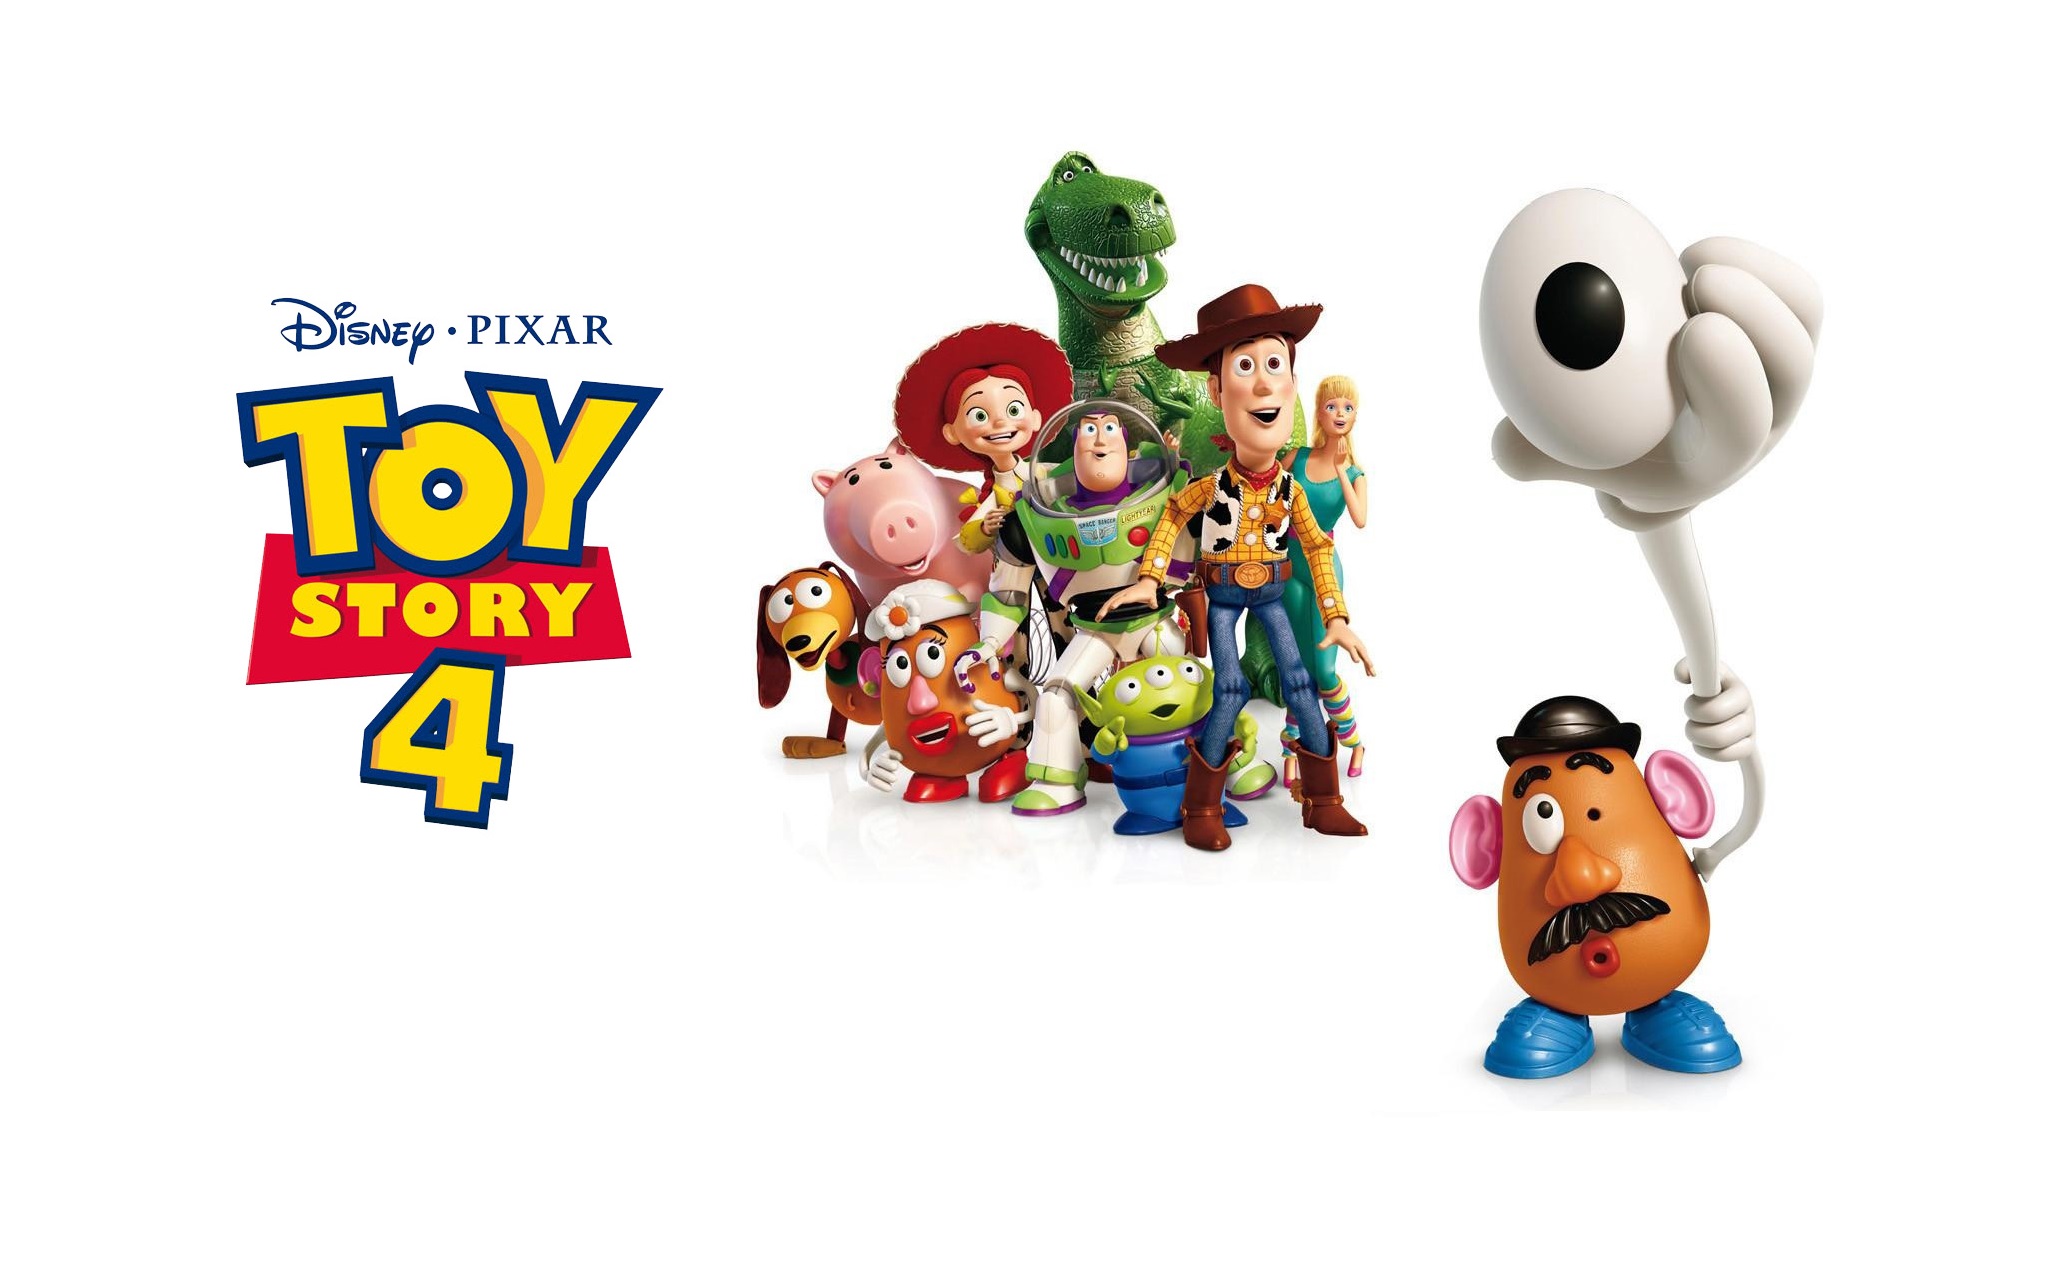 Mời xem trailer Toy Story 4: Pixar chỉ làm phần 4 khi chắc chắn nó phải hay hơn 3 phần trước